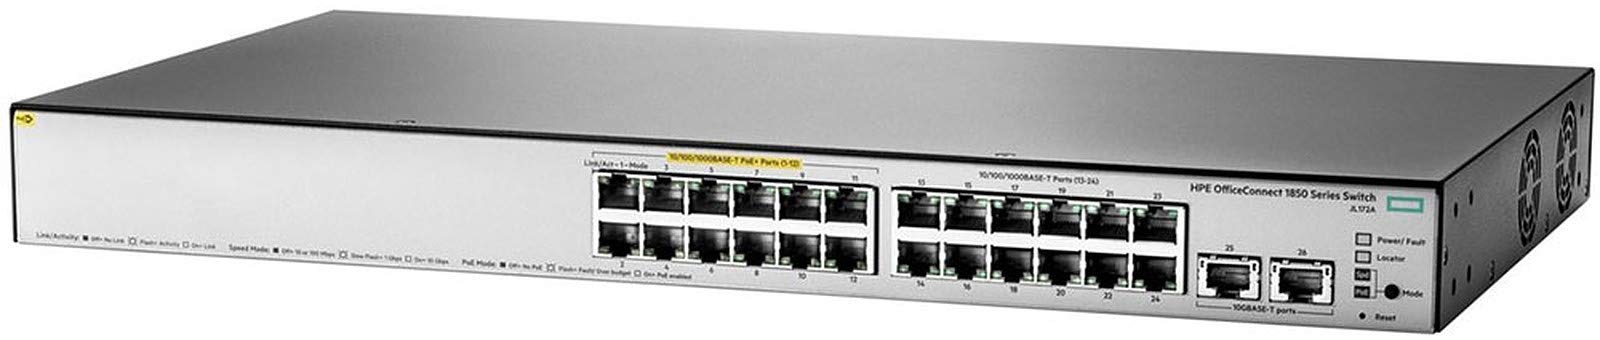 Hewlett Packard Enterprise HP Officeconnect 1850 24 G 2 X Gt PoE + 185 W